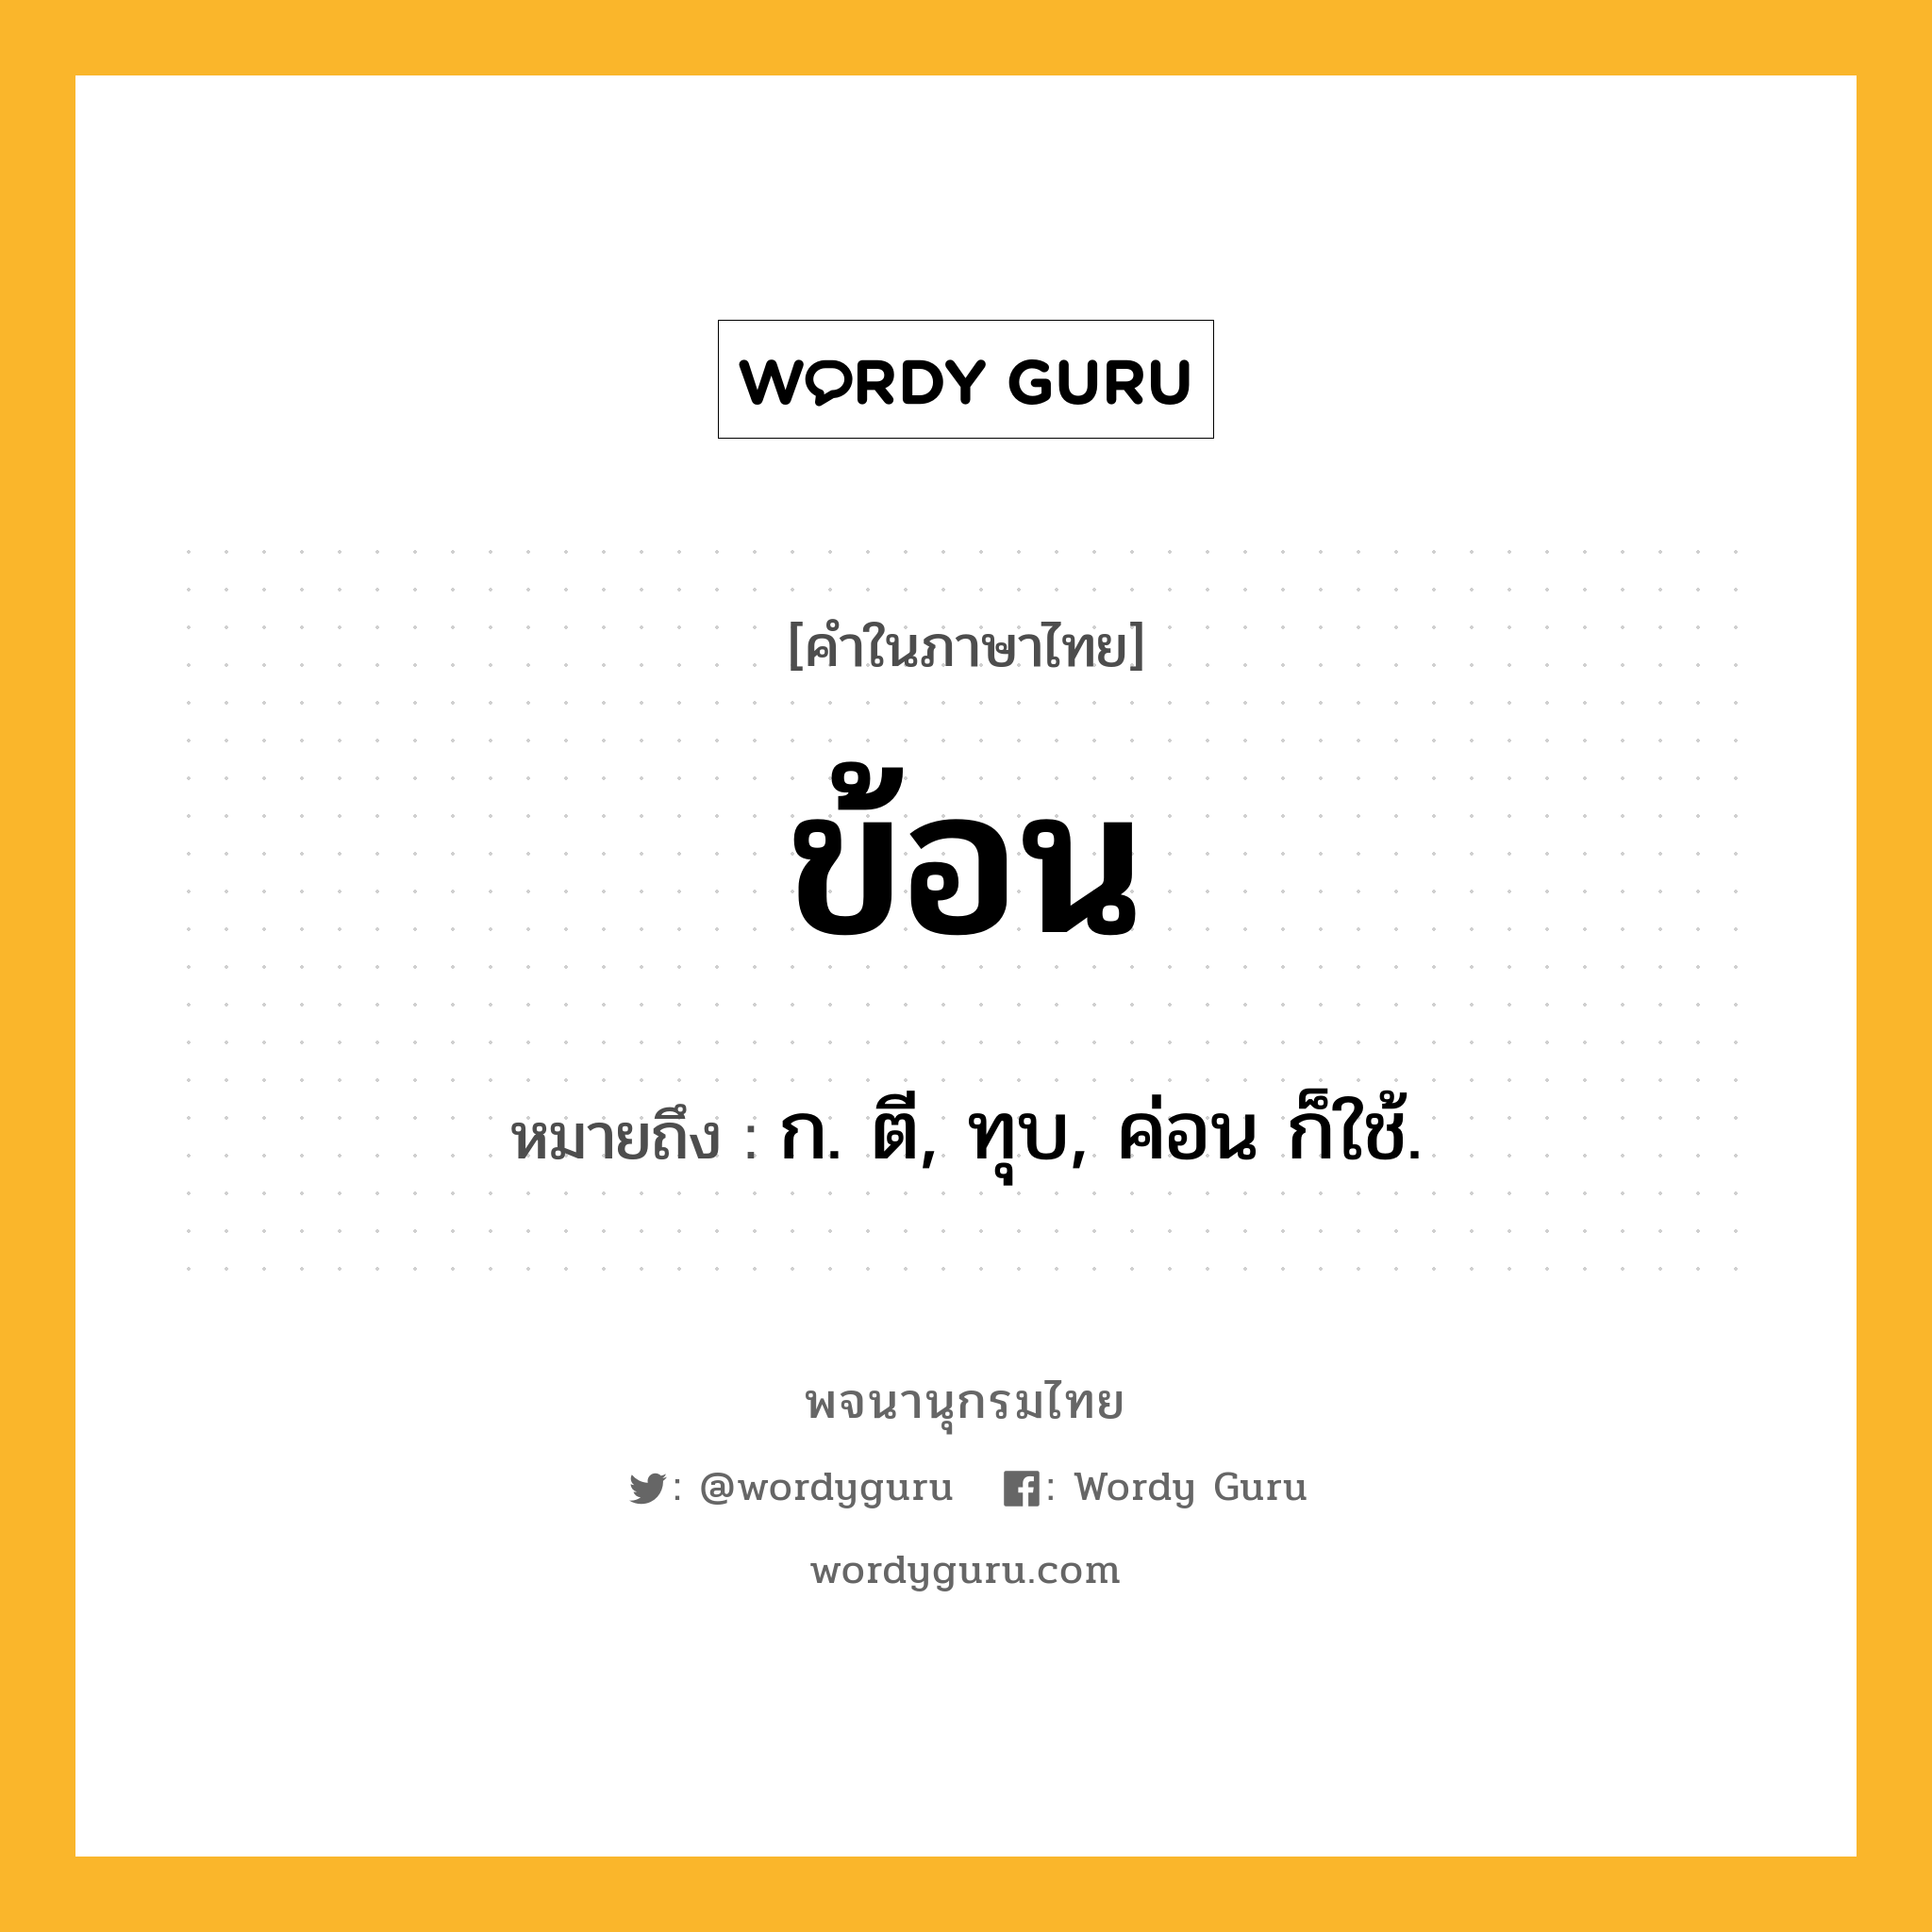 ข้อน ความหมาย หมายถึงอะไร?, คำในภาษาไทย ข้อน หมายถึง ก. ตี, ทุบ, ค่อน ก็ใช้.